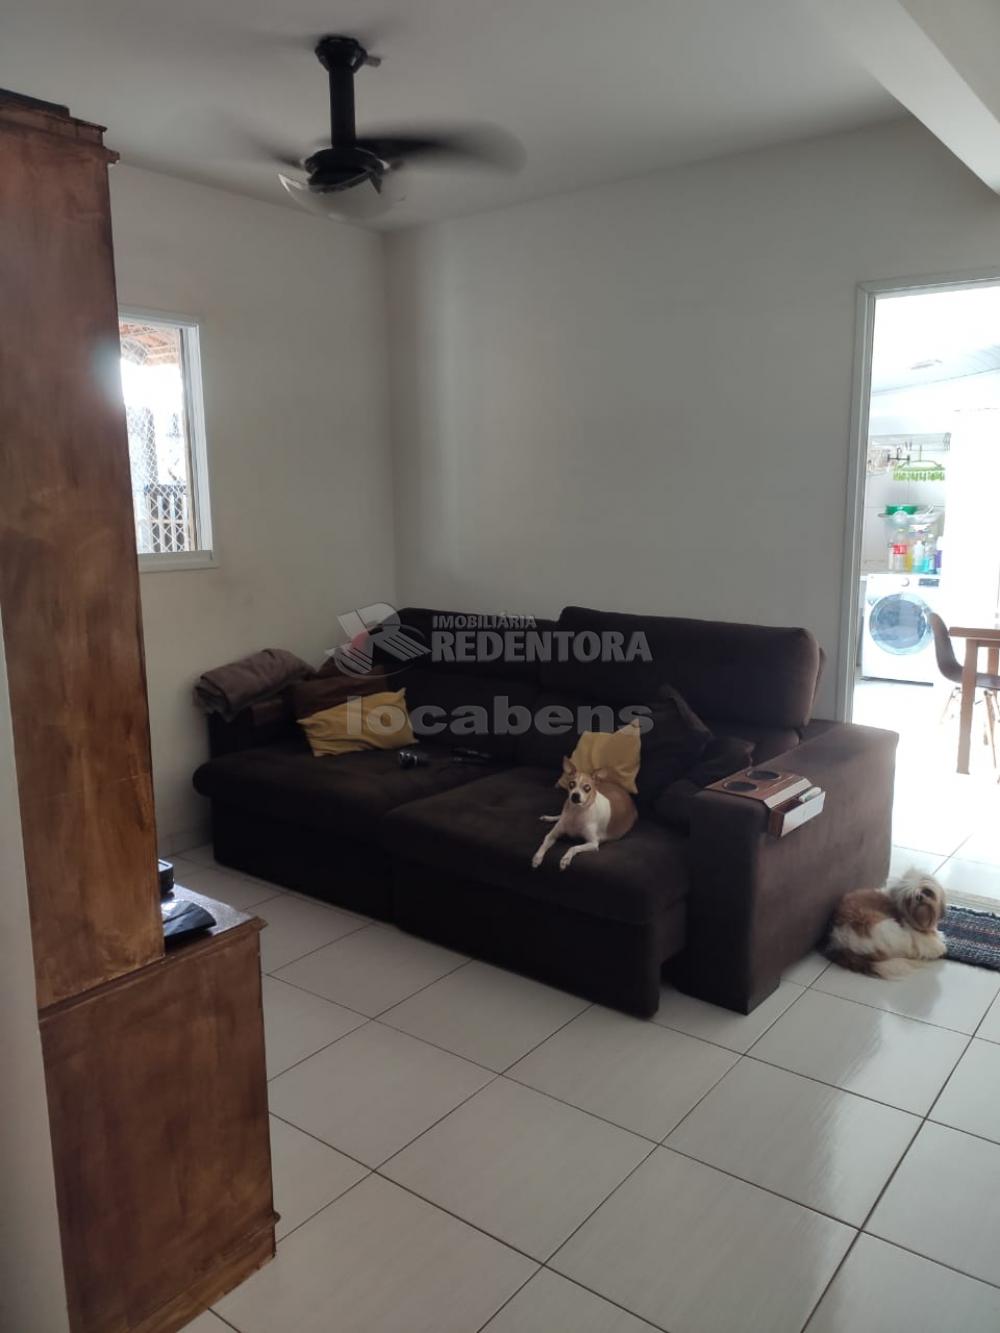 Alugar Casa / Condomínio em São José do Rio Preto apenas R$ 700,00 - Foto 2